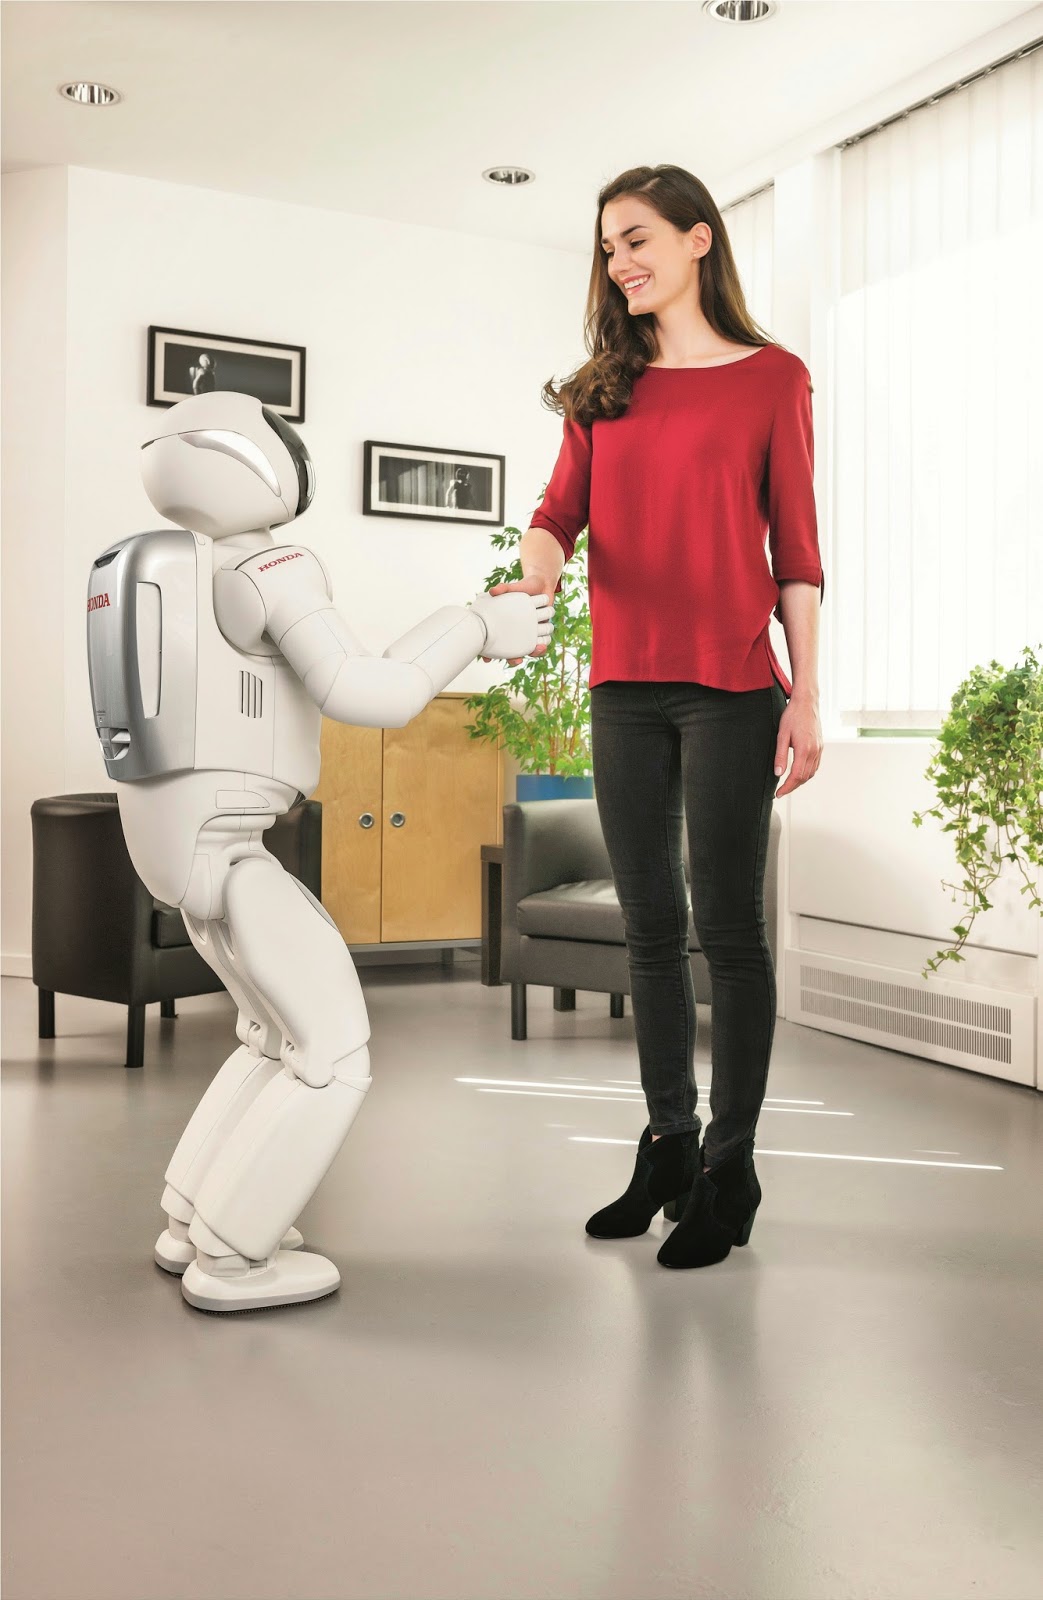 Πανευρωπαϊκή παρουσίαση του νέου ASIMO, του πιο σύγχρονου Ανθρωποειδούς Ρομπότ της Honda - Φωτογραφία 1